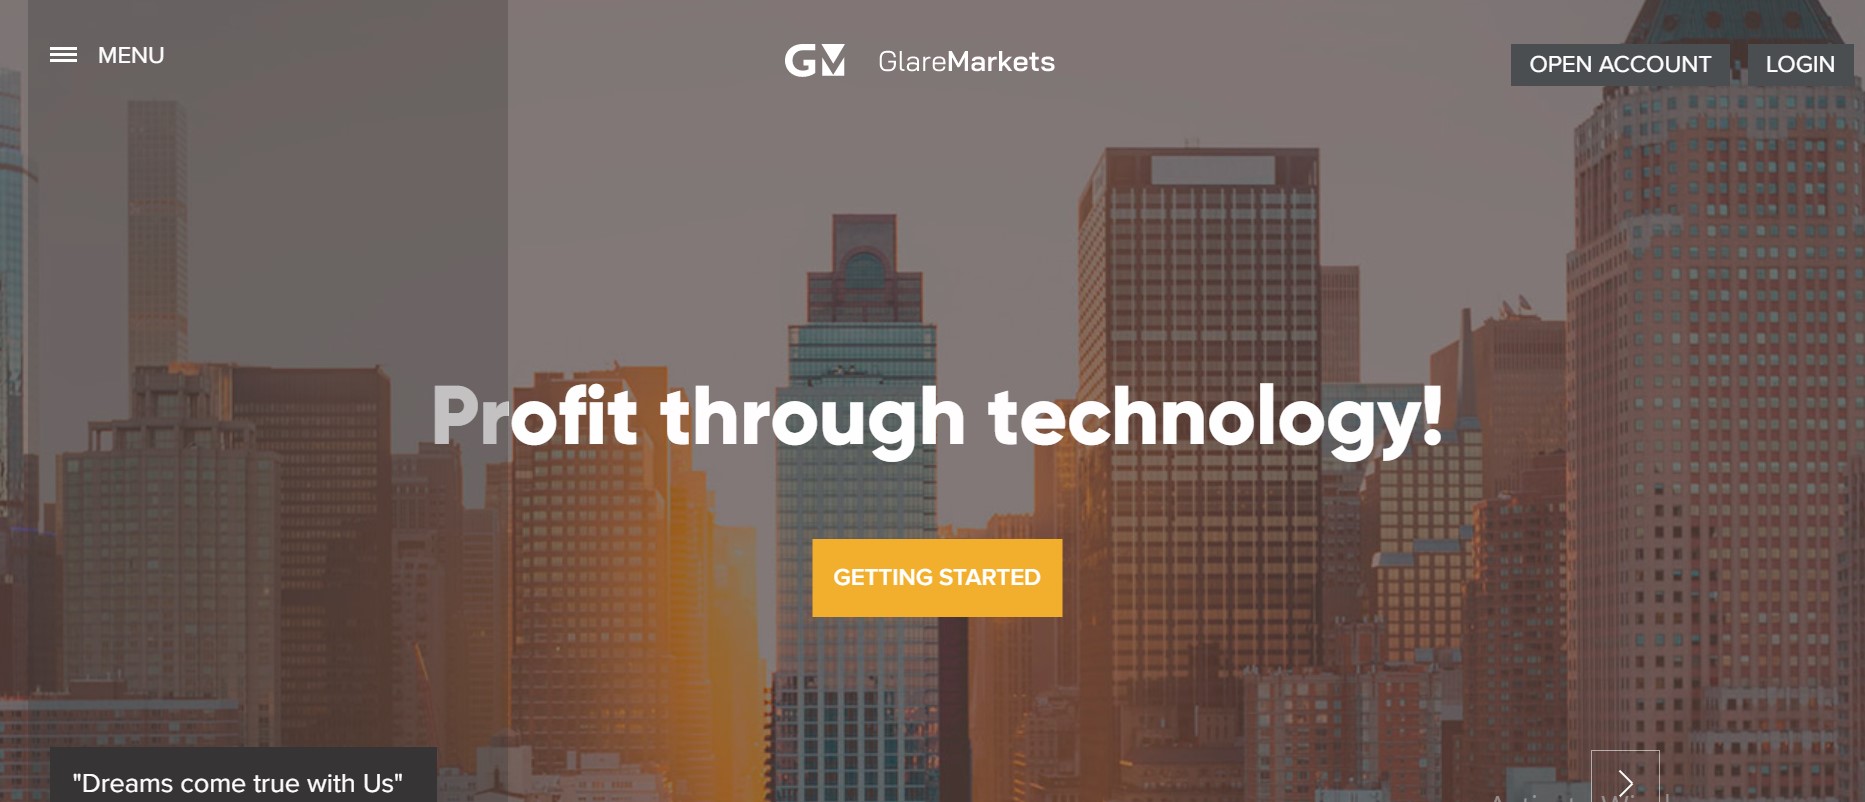 Glare Markets website